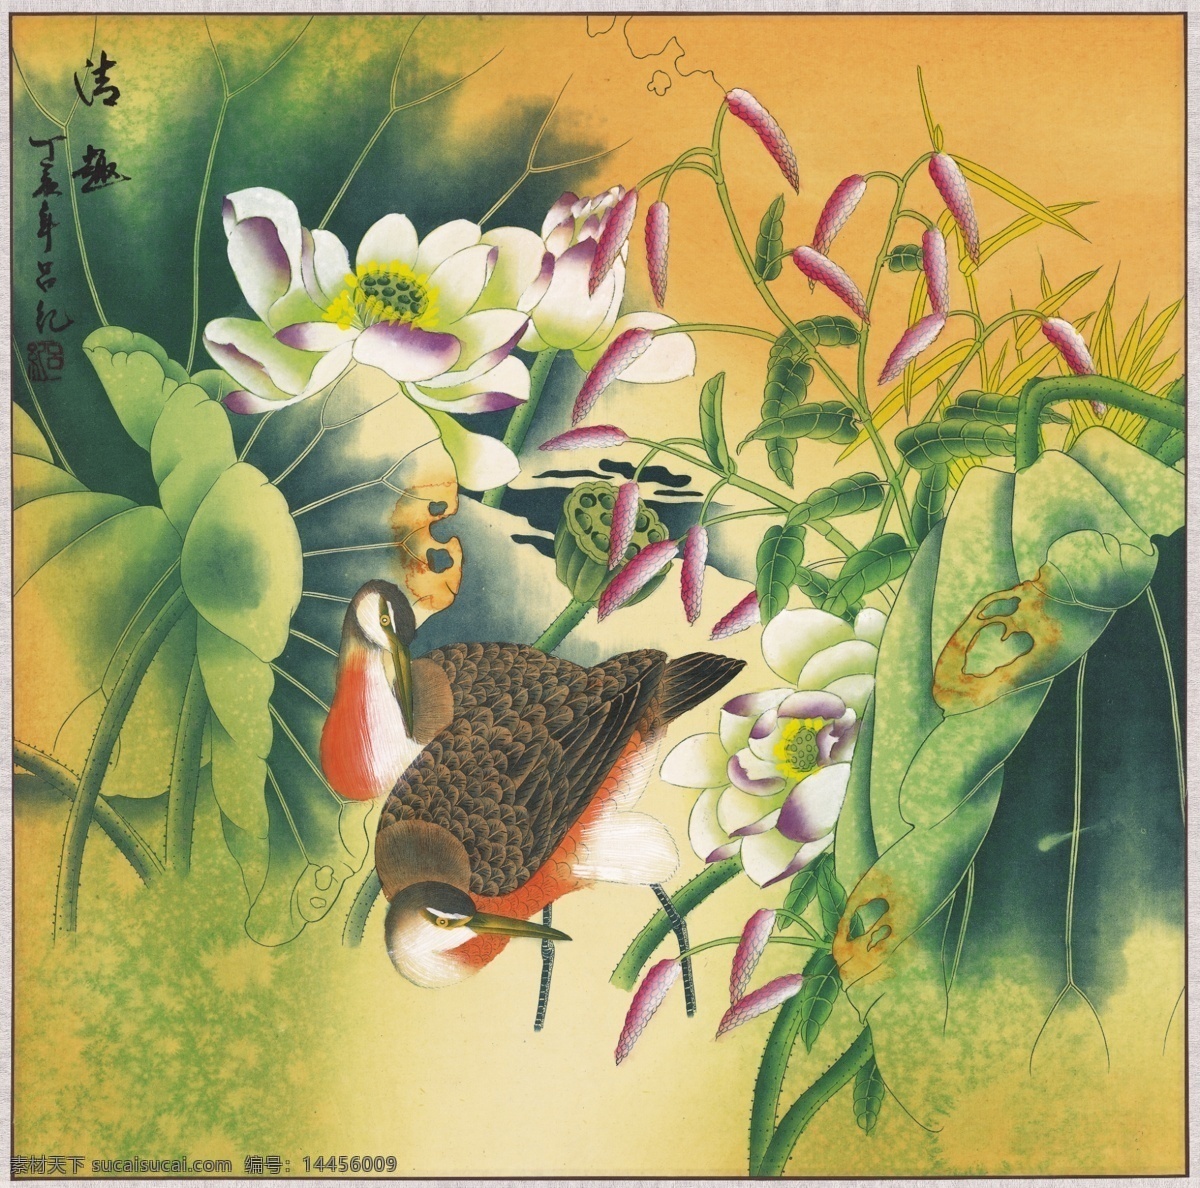 中式 古典 花鸟 工笔画 中国风绘画 精美绘画 植物花鸟 装饰画 古典画 牡丹花朵 文化艺术 美术绘画